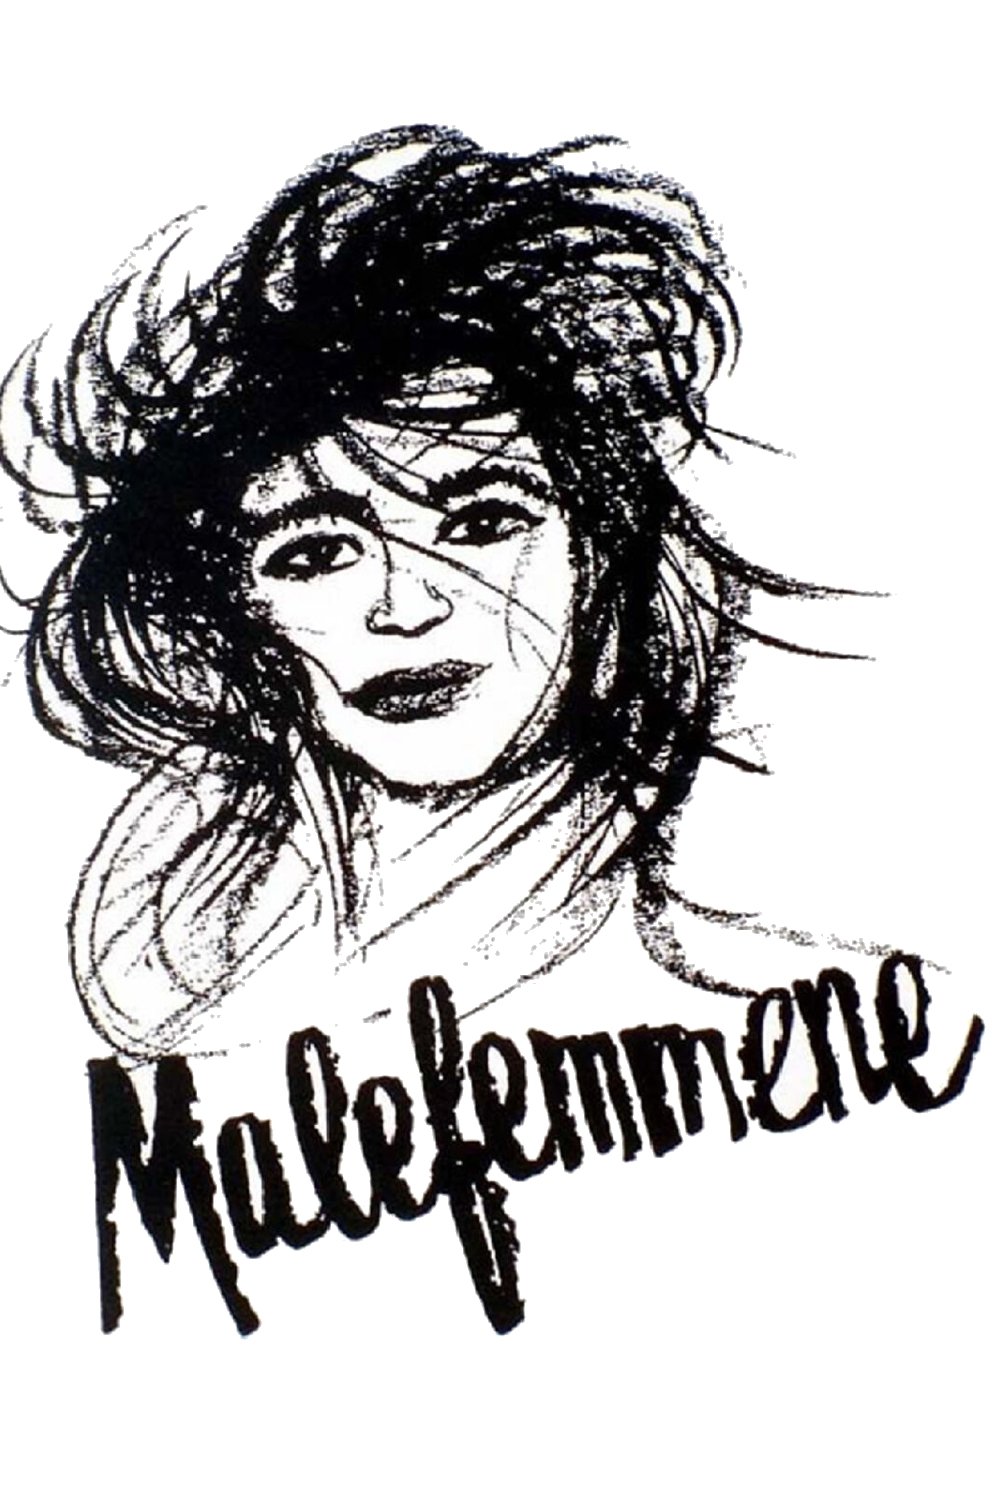 Malefemmene (2001)